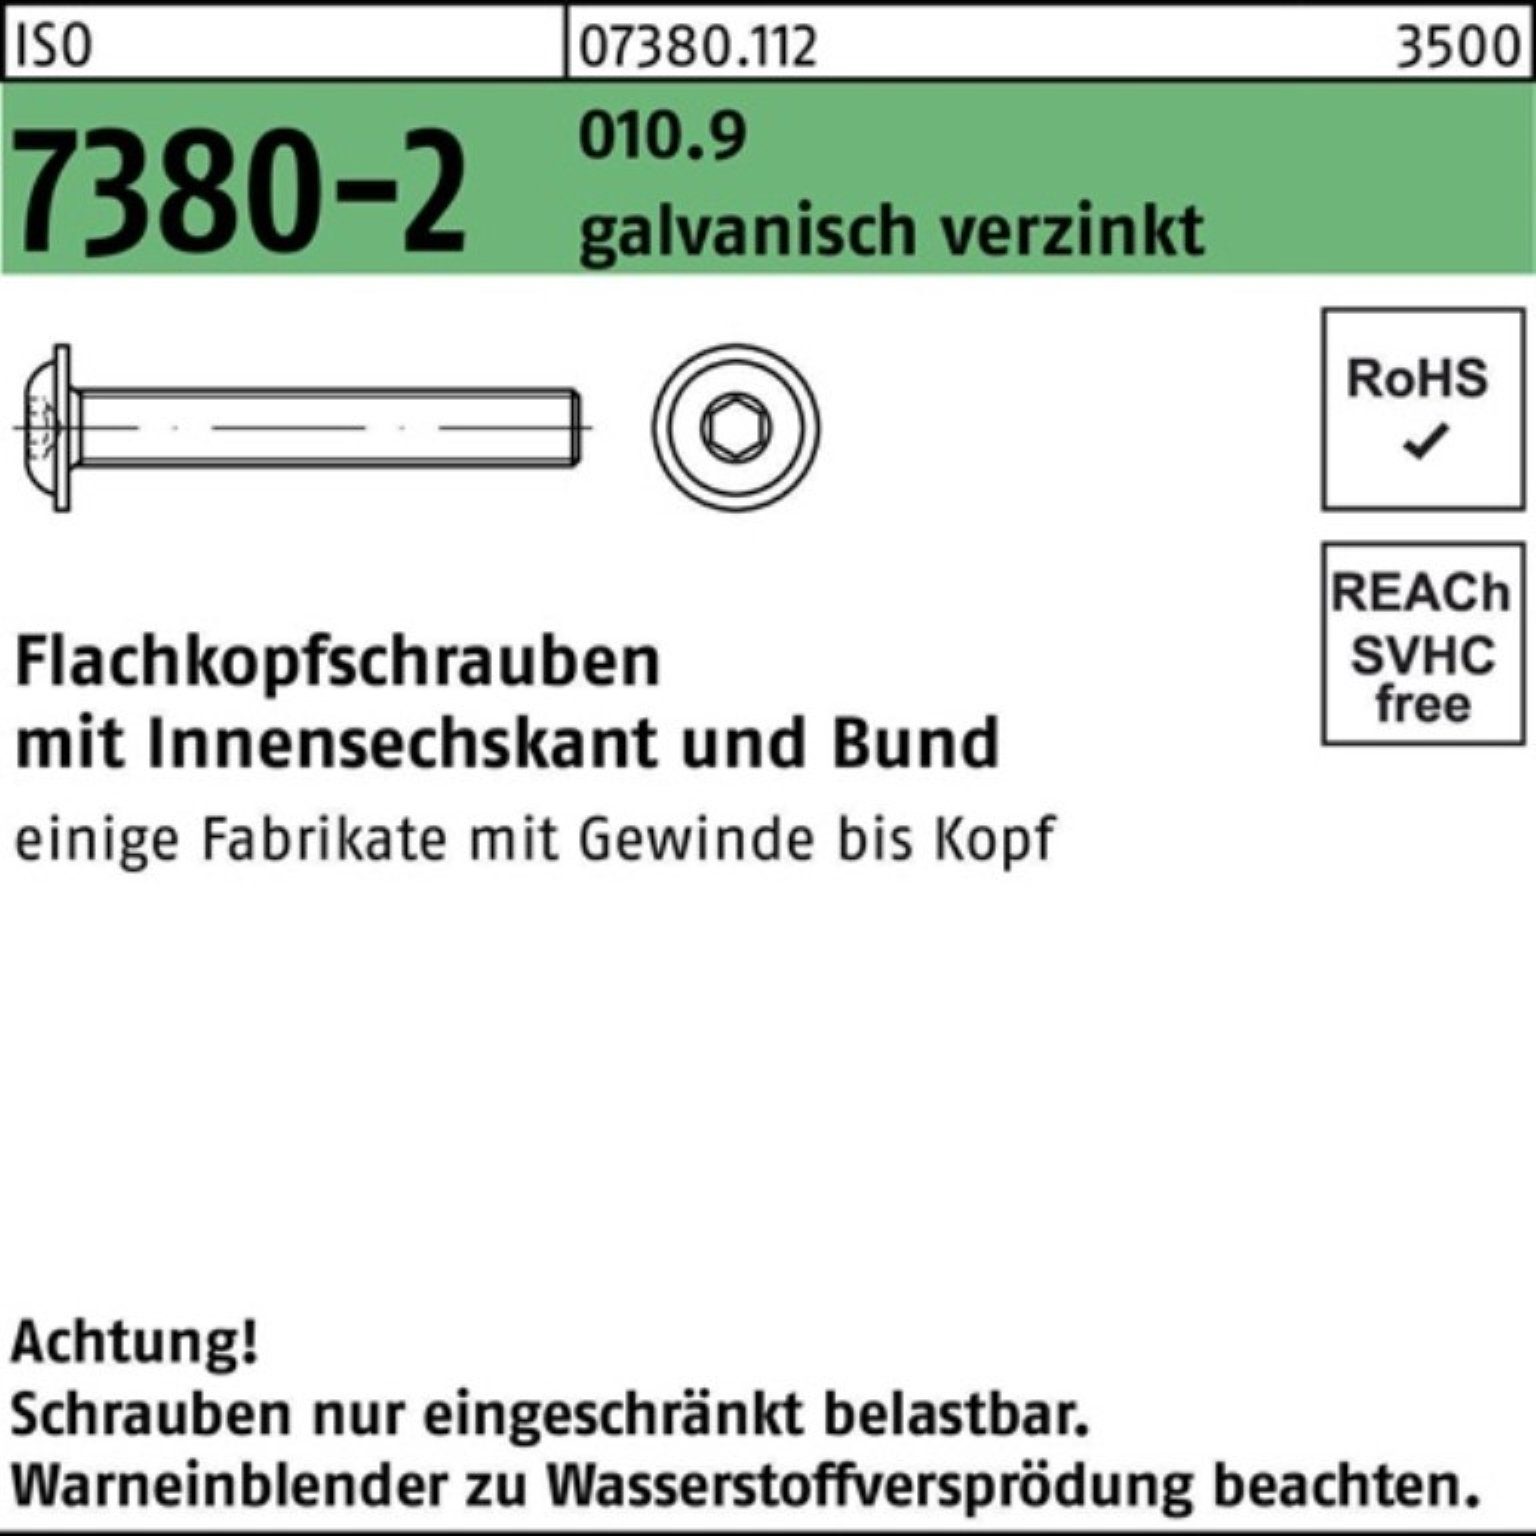 Reyher Schraube 500er Pack Flachkopfschraube Bund/Innen-6kt galv 010.9 7380-2 ISO M3x6